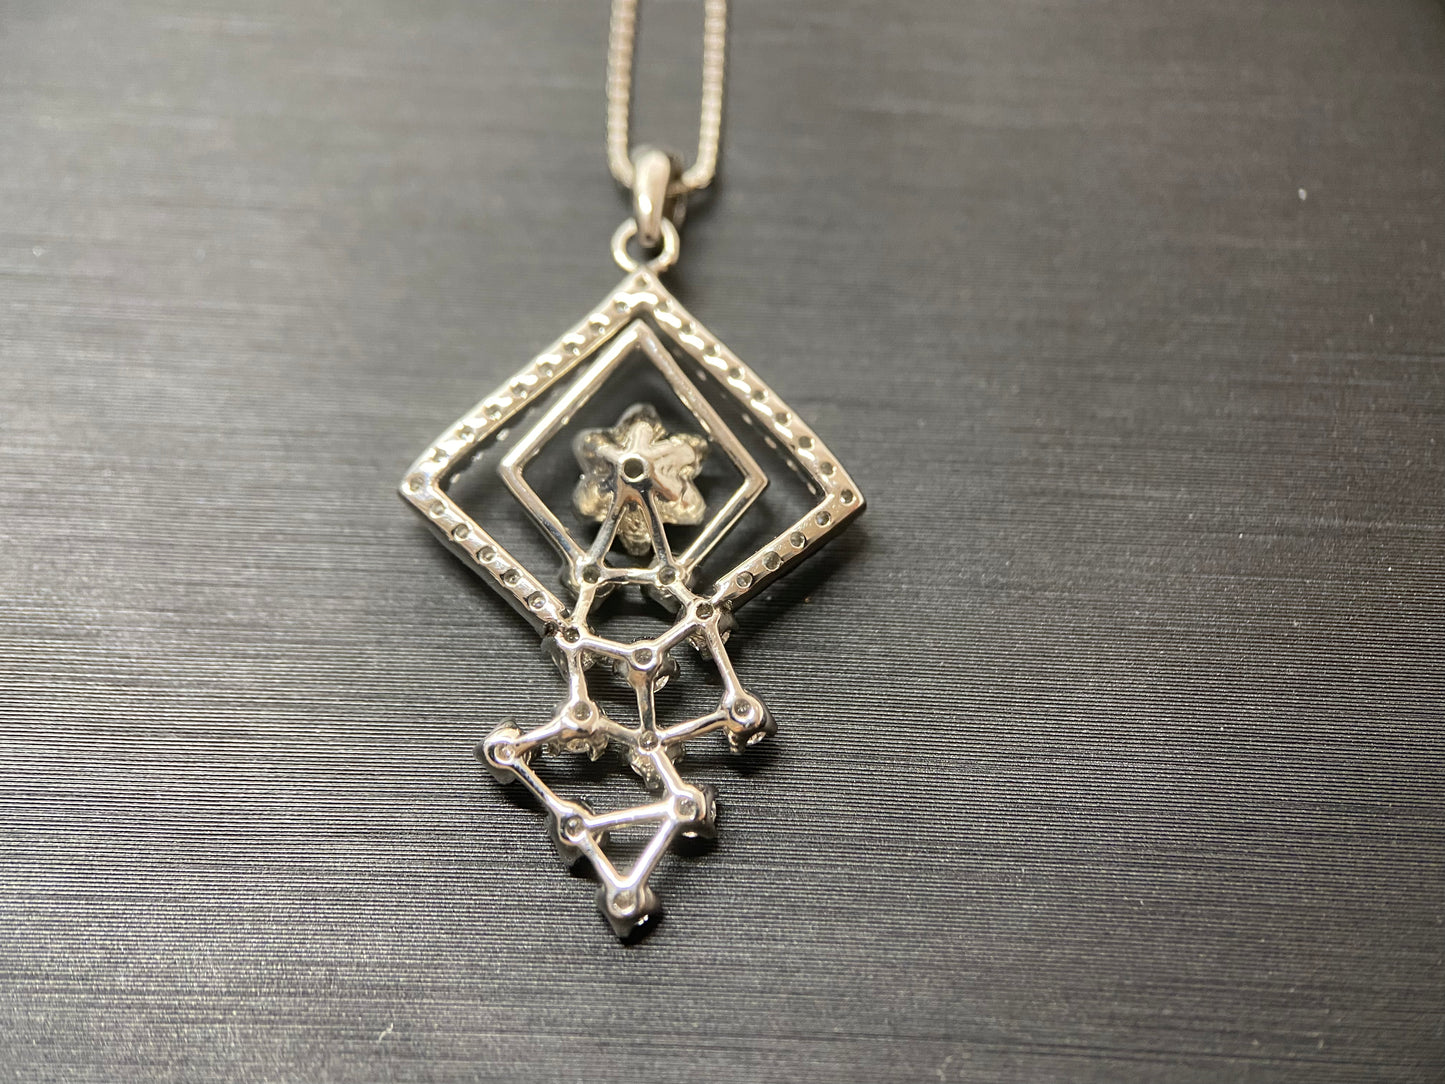 New] Tiny Flower Garden Diamond Jewelry Necklace